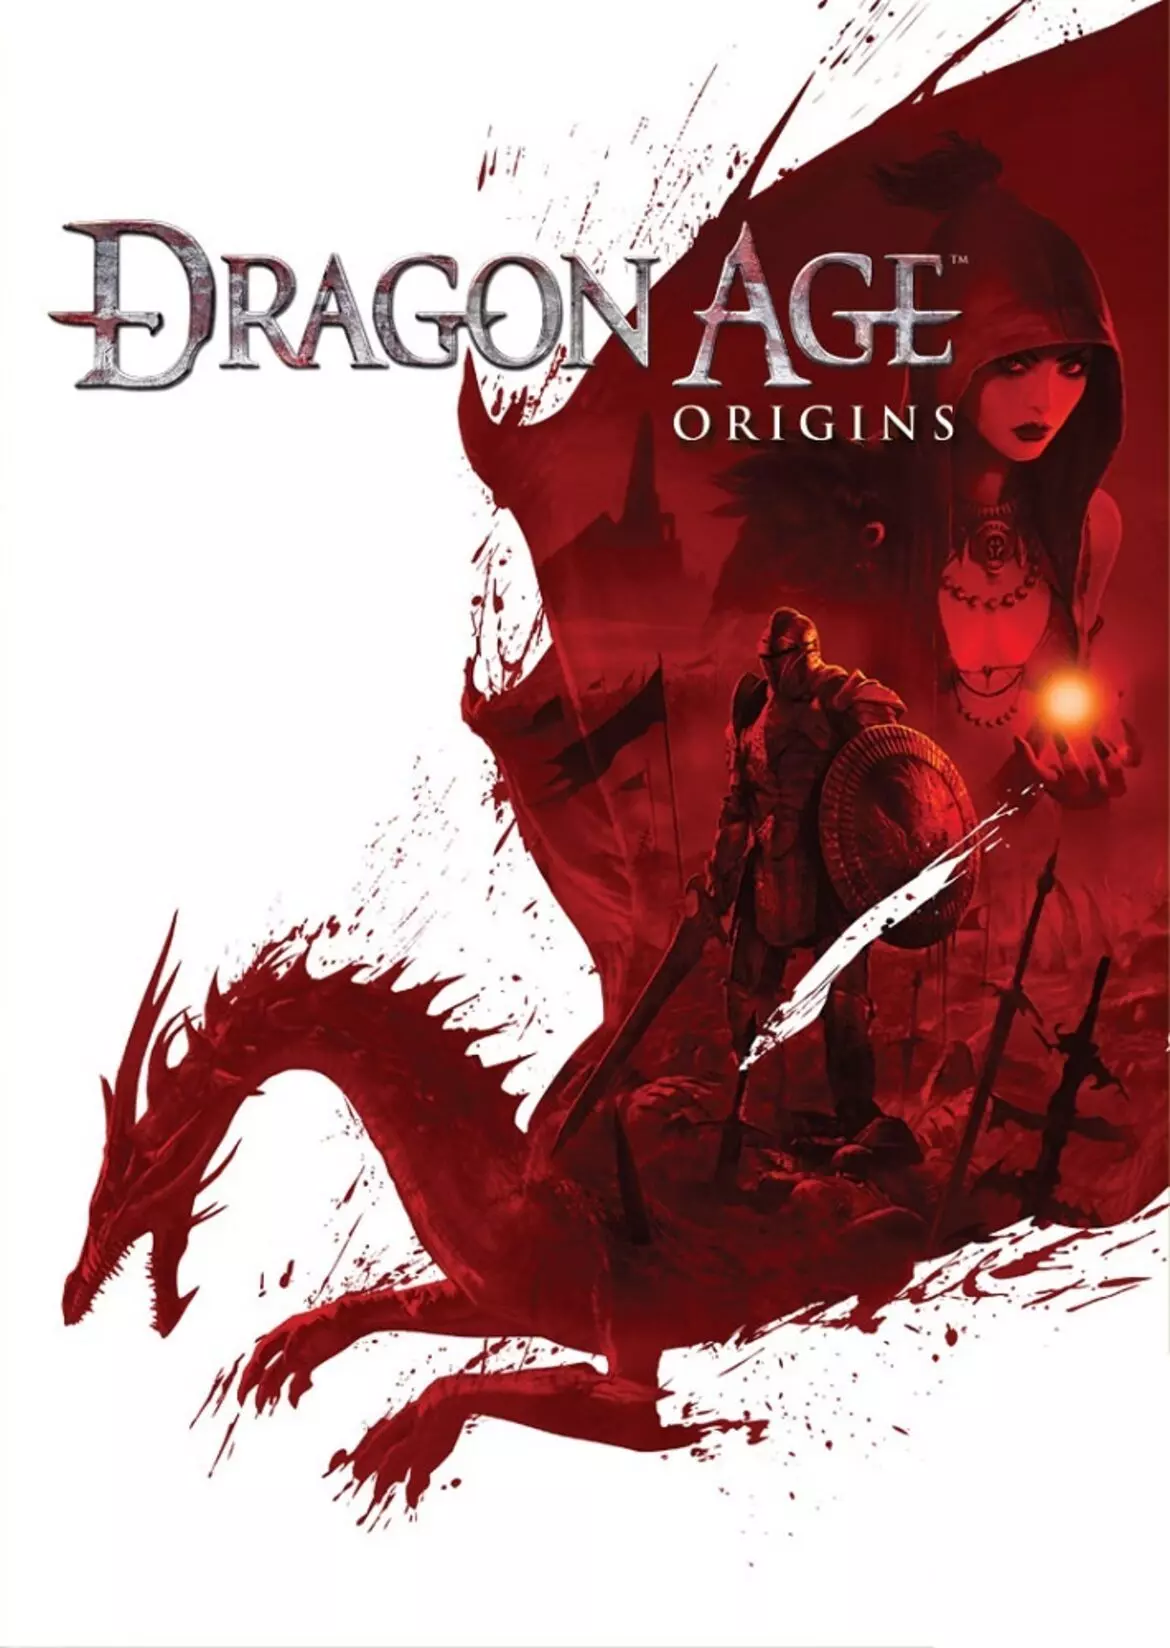 
Dragon Age: Origins (в русской локализации Dragon Age: Начало) — компьютерная ролевая игра, разработанная канадской студией BioWare и выпущенная компанией Electronic Arts для Windows, Playstation 3, Xbox 360 и macOS в 2009 году.